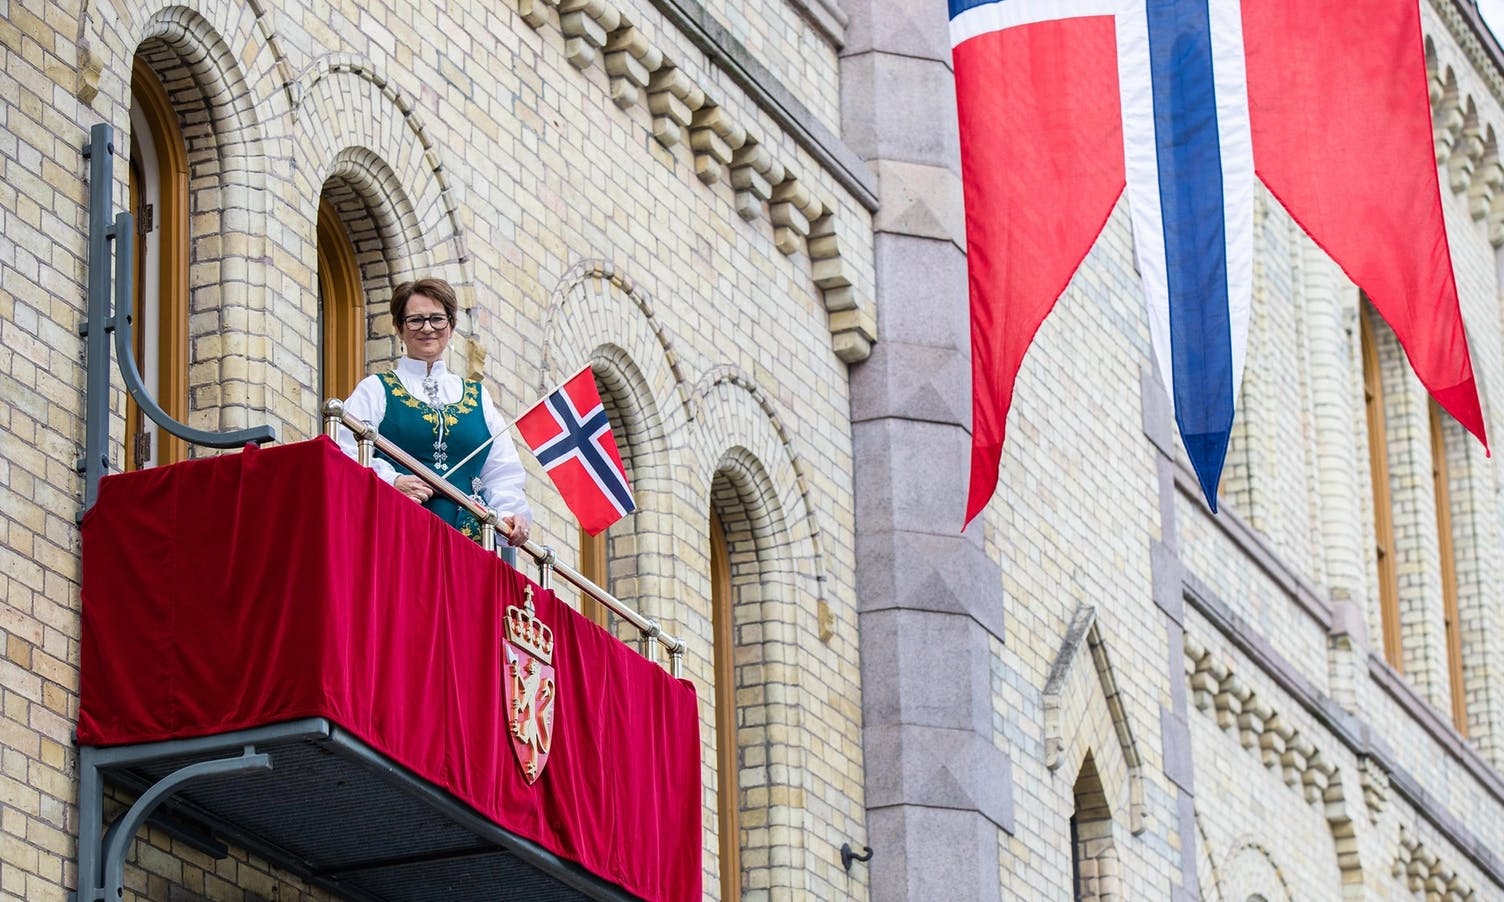 Stortingspresident Tone Wilhelmsen Trøen. Her fra Stortingets balkong på 17. mai i 2020. (Foto: Stortinget)